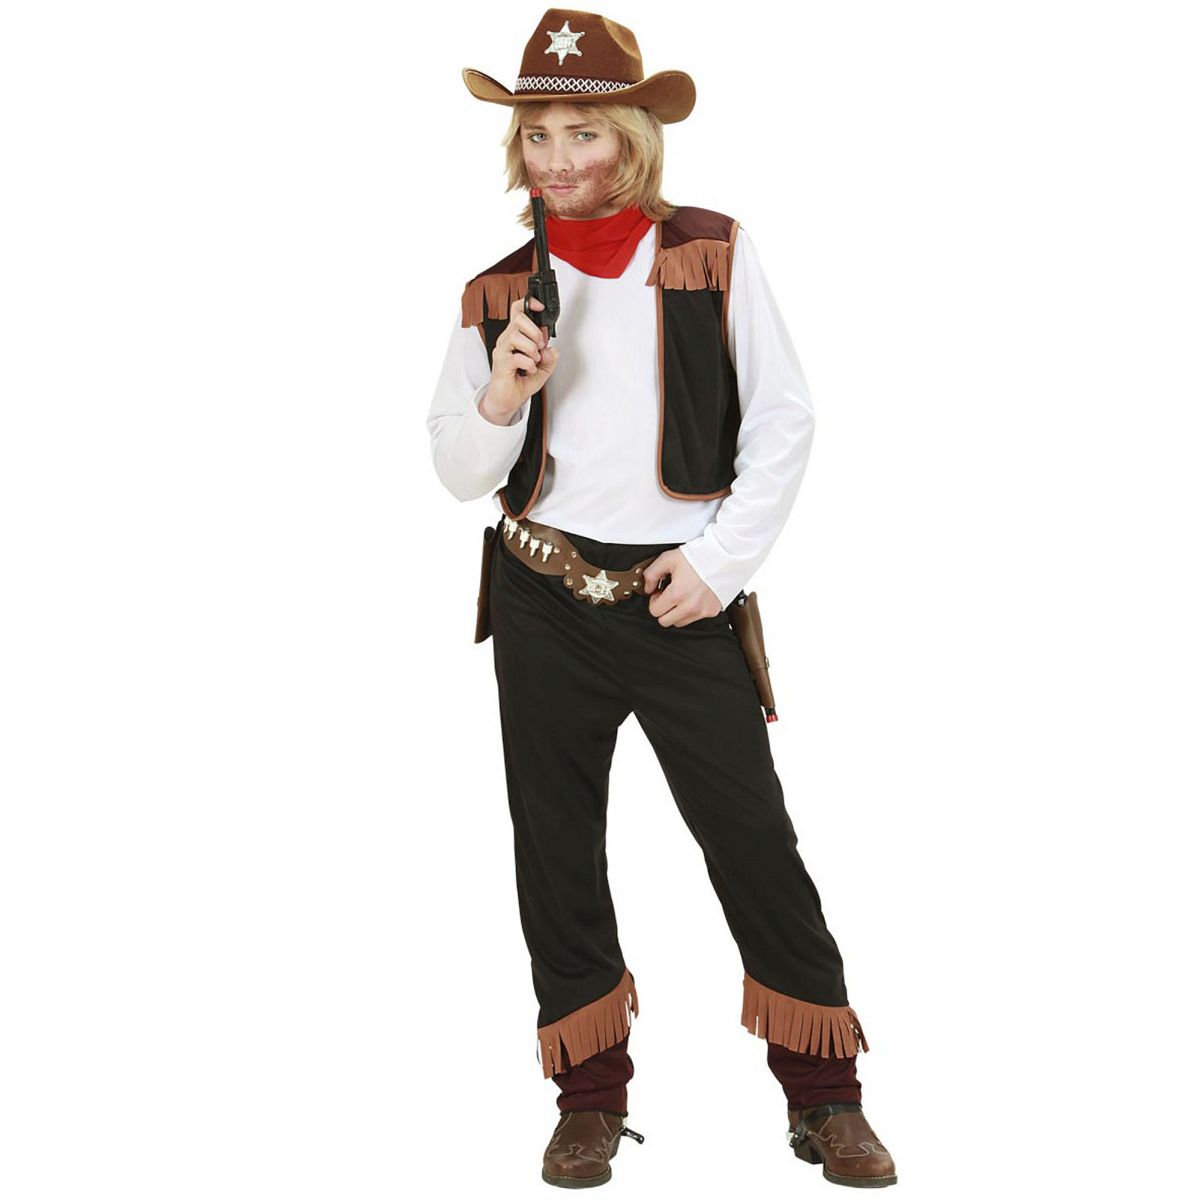 Cowboy Kostüm Hemd mit Weste, Hose, Halstuch Gr. 128 cm / 5-7 Jahre